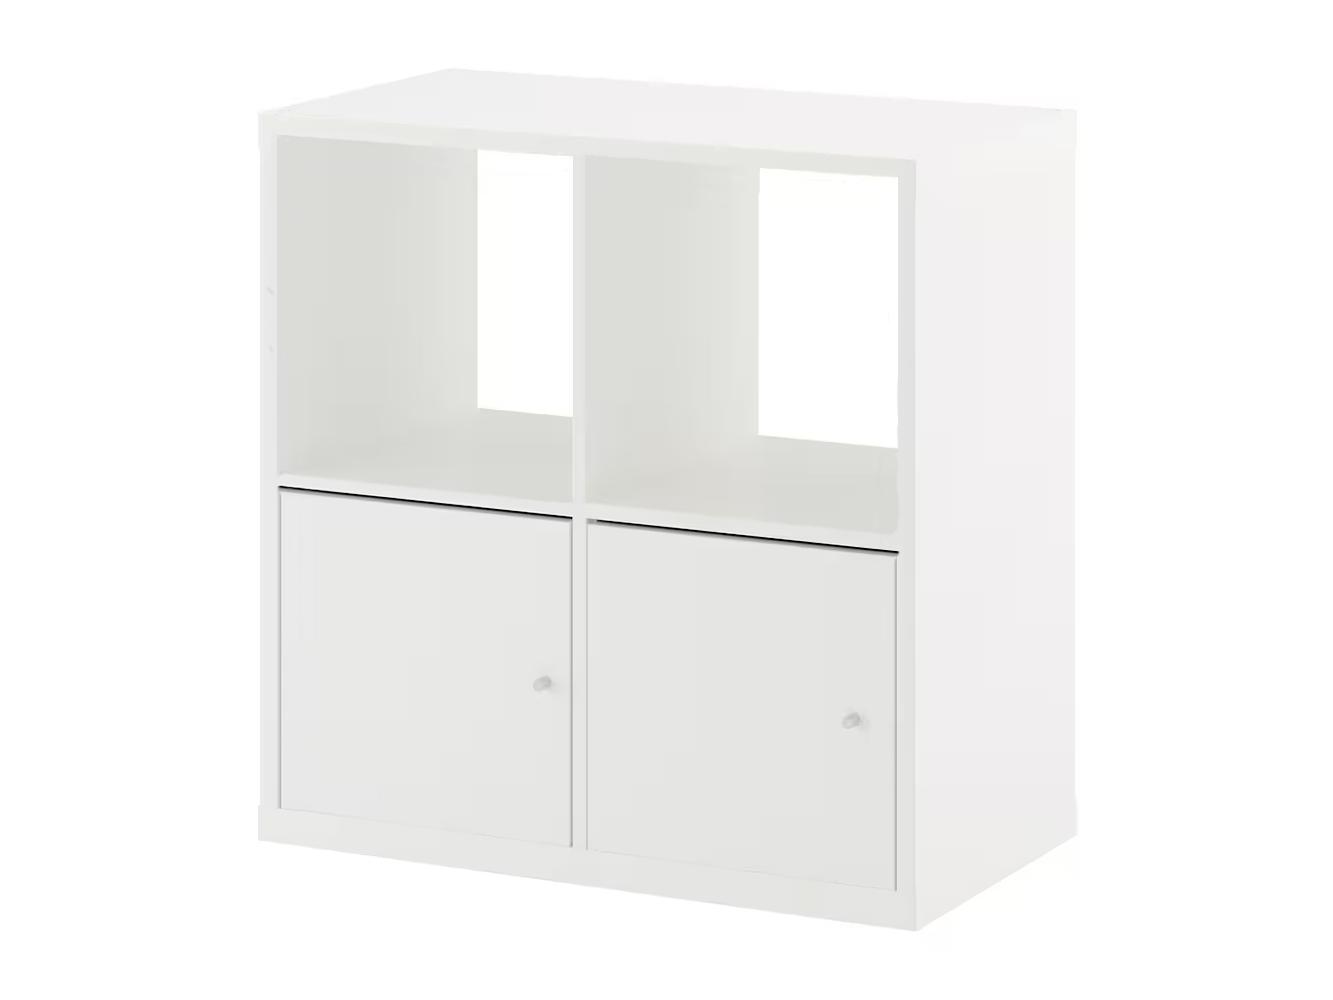 Стеллаж Каллакс 223 white ИКЕА (IKEA) изображение товара